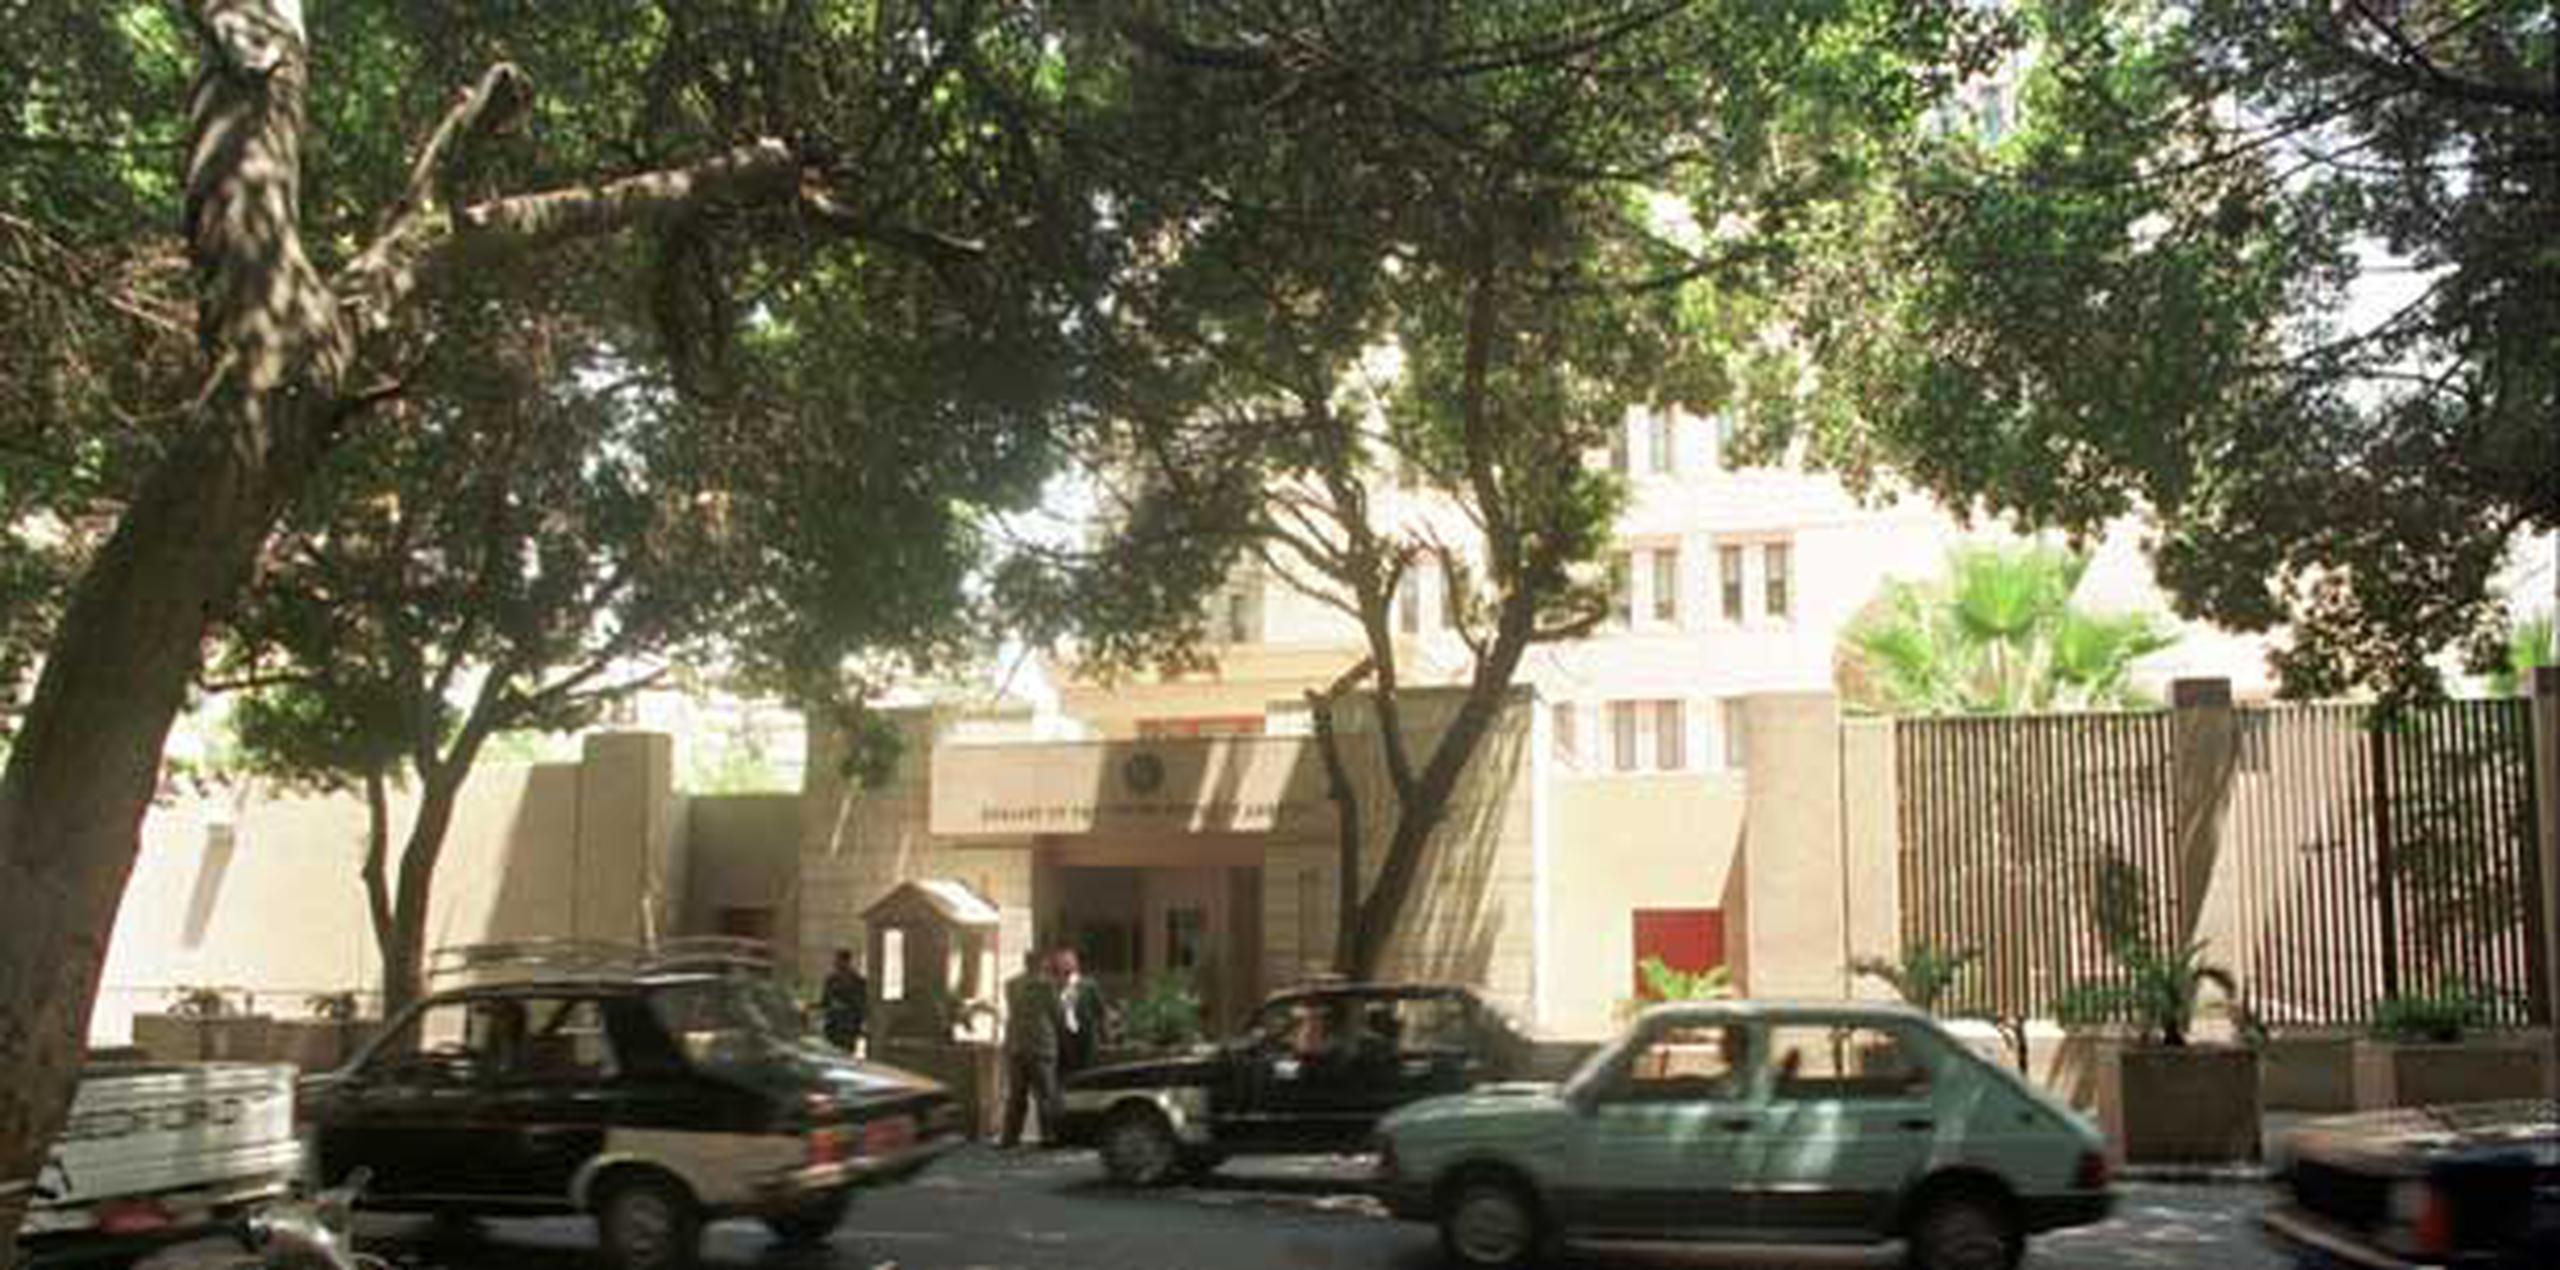 La embajada de Estados Unidos en El Cairo, Egipto, es una de las que permanecerá cerrada el domingo.